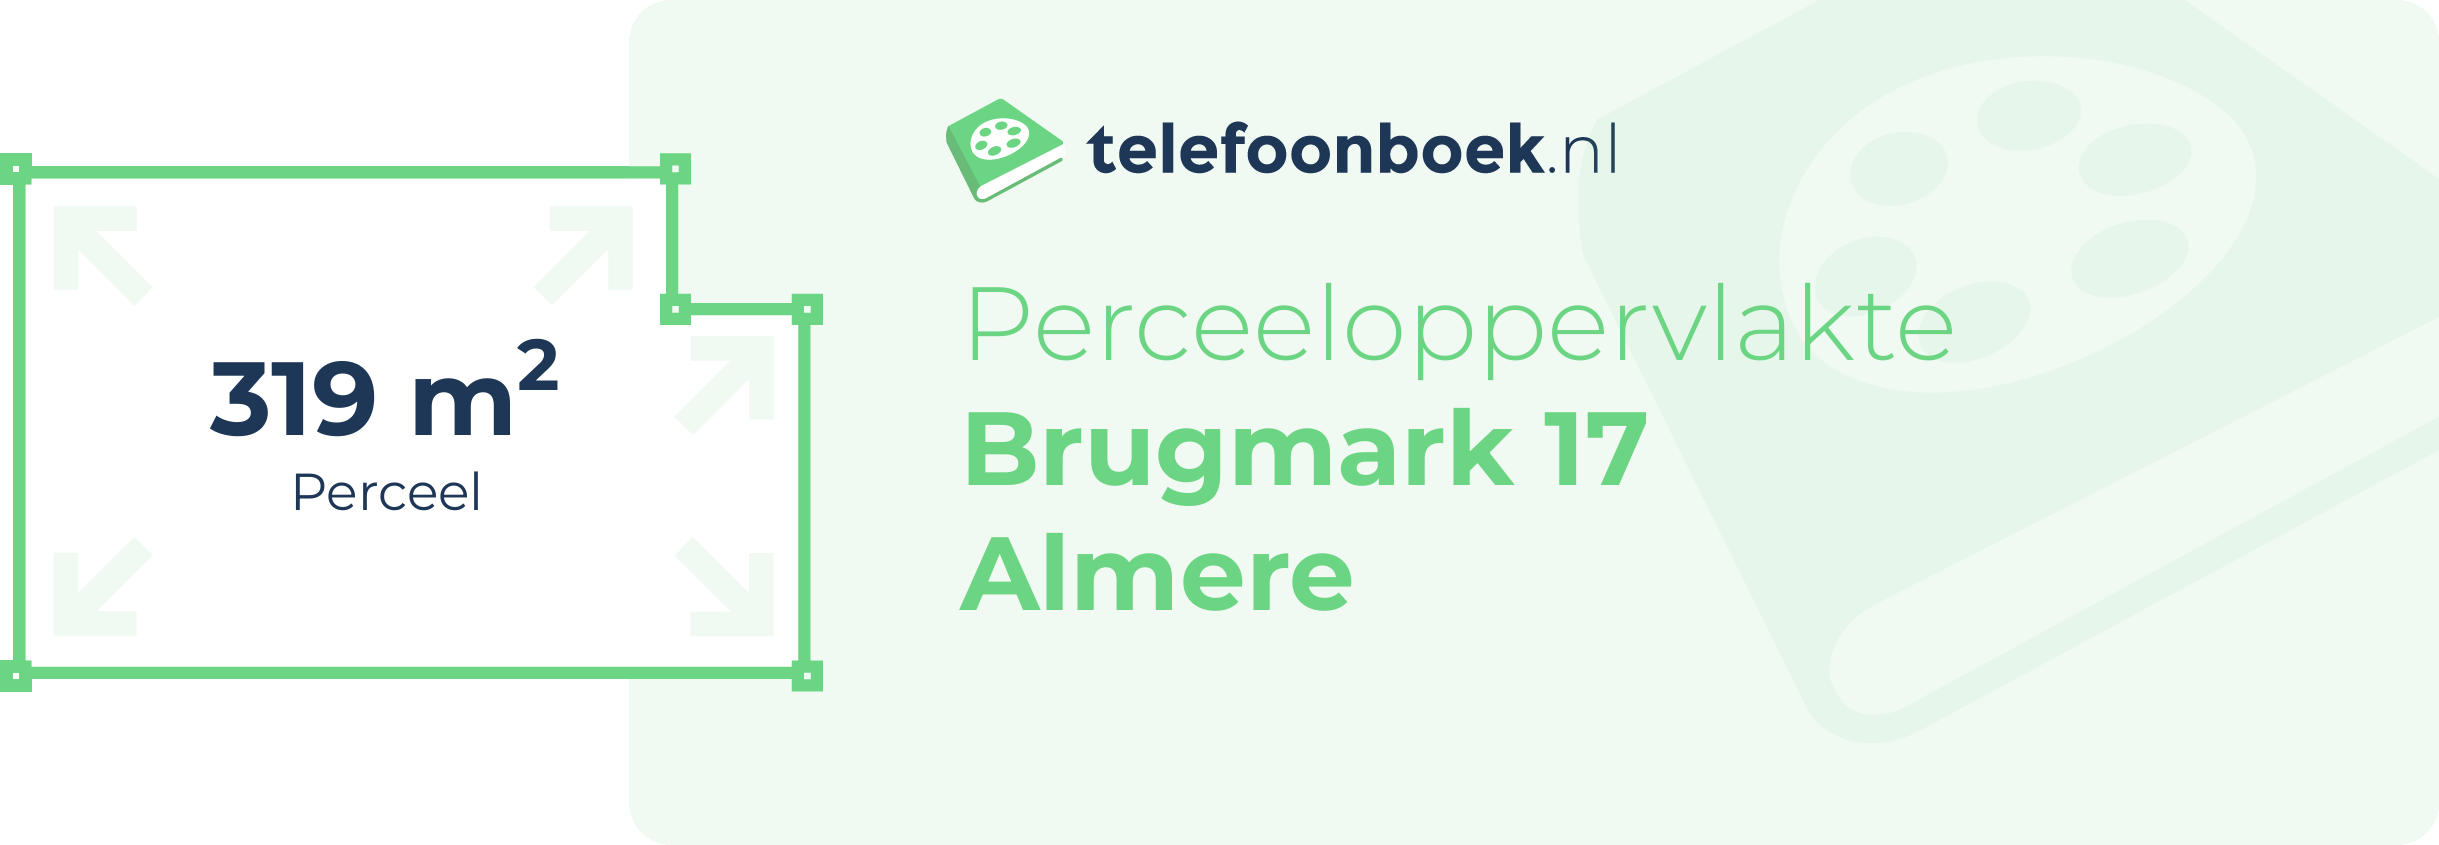 Perceeloppervlakte Brugmark 17 Almere